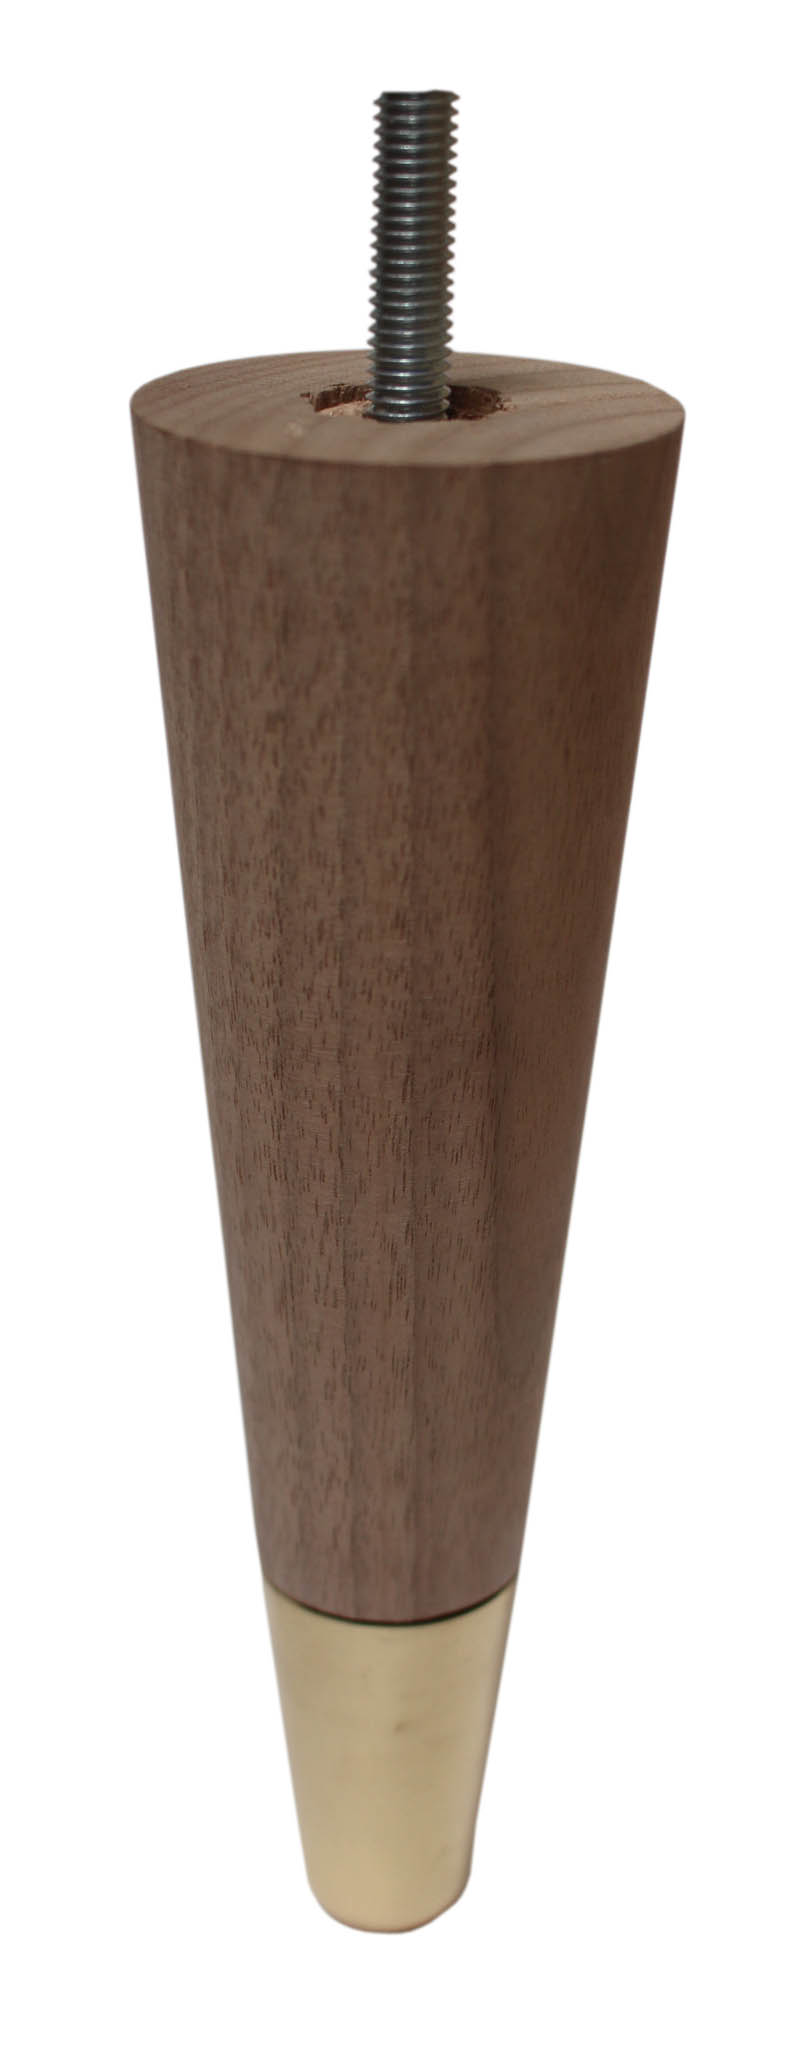 Agata Solid Walnut Tapered Furniture Legs - Raw Finish - Brass Slipper Cups - Set of 4